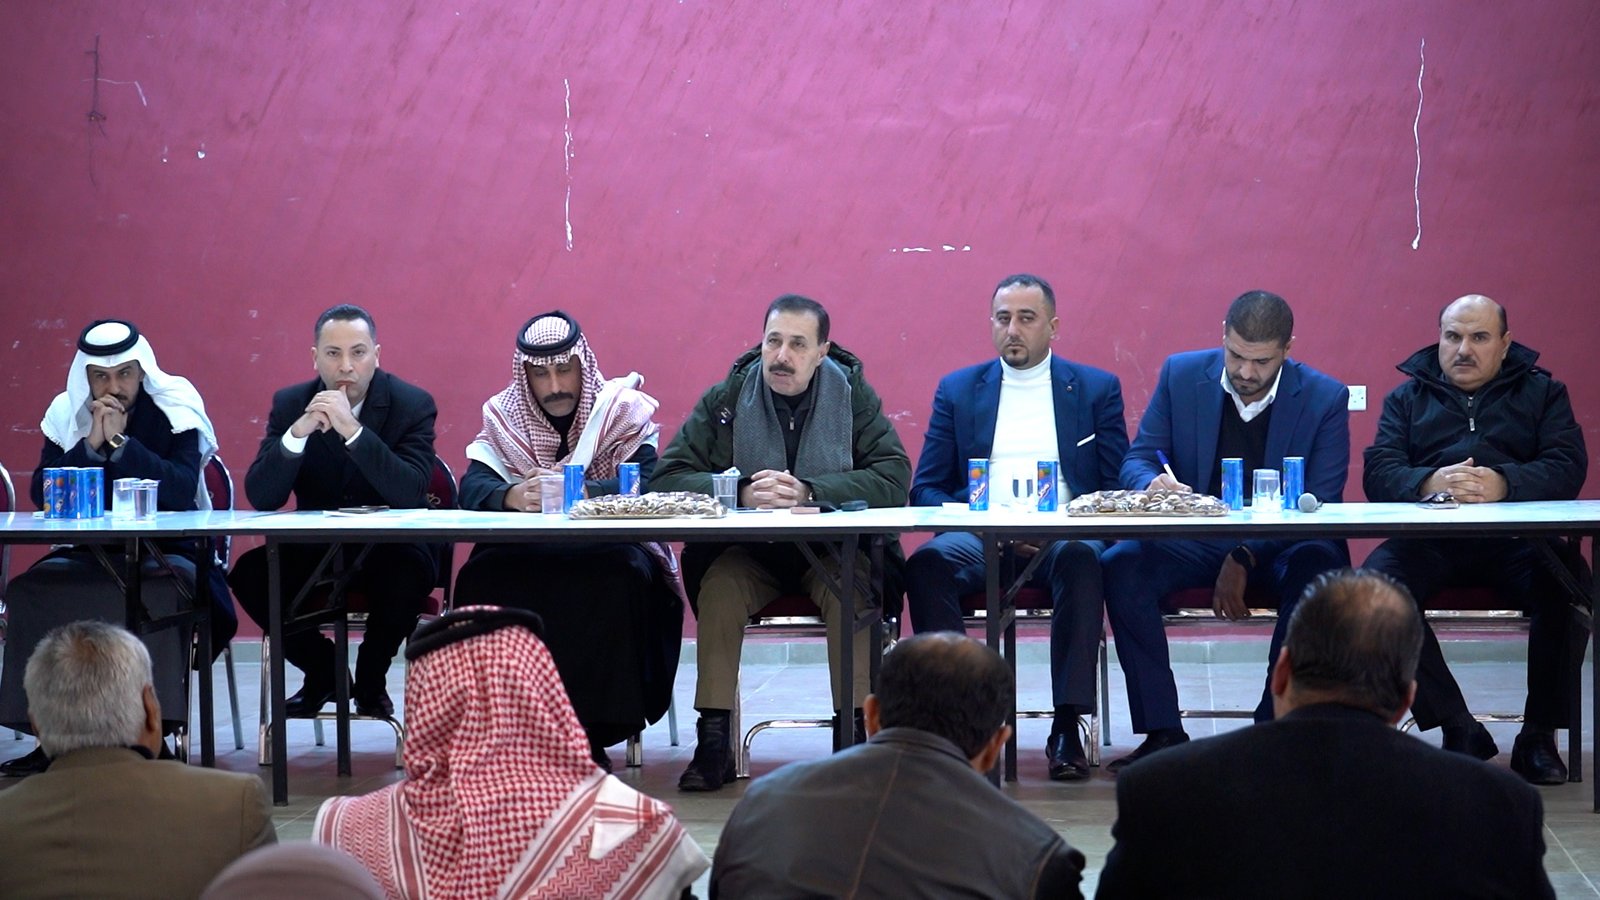 النعيمي خلال لقاء حزب إرادة في الزعتري : ” الأردن قوي رغم التحديات الجيوسياسية، فهو تأسس بالقلم والبندقية “.